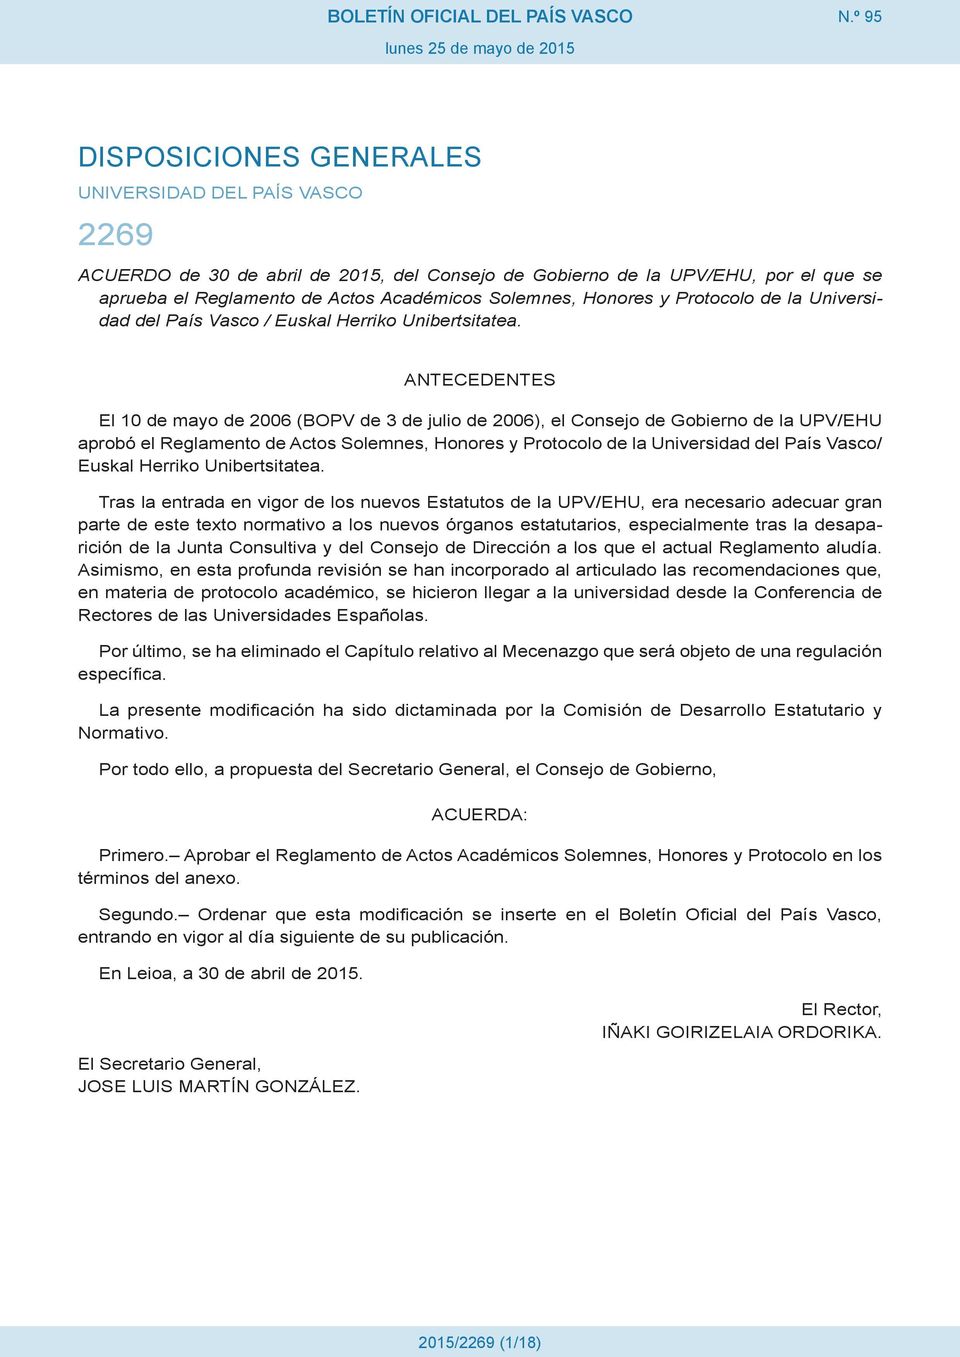 ANTECEDENTES El 10 de mayo de 2006 (BOPV de 3 de julio de 2006), el Consejo de Gobierno de la UPV/EHU aprobó el Reglamento de Actos Solemnes, Honores y Protocolo de la Universidad del País Vasco/